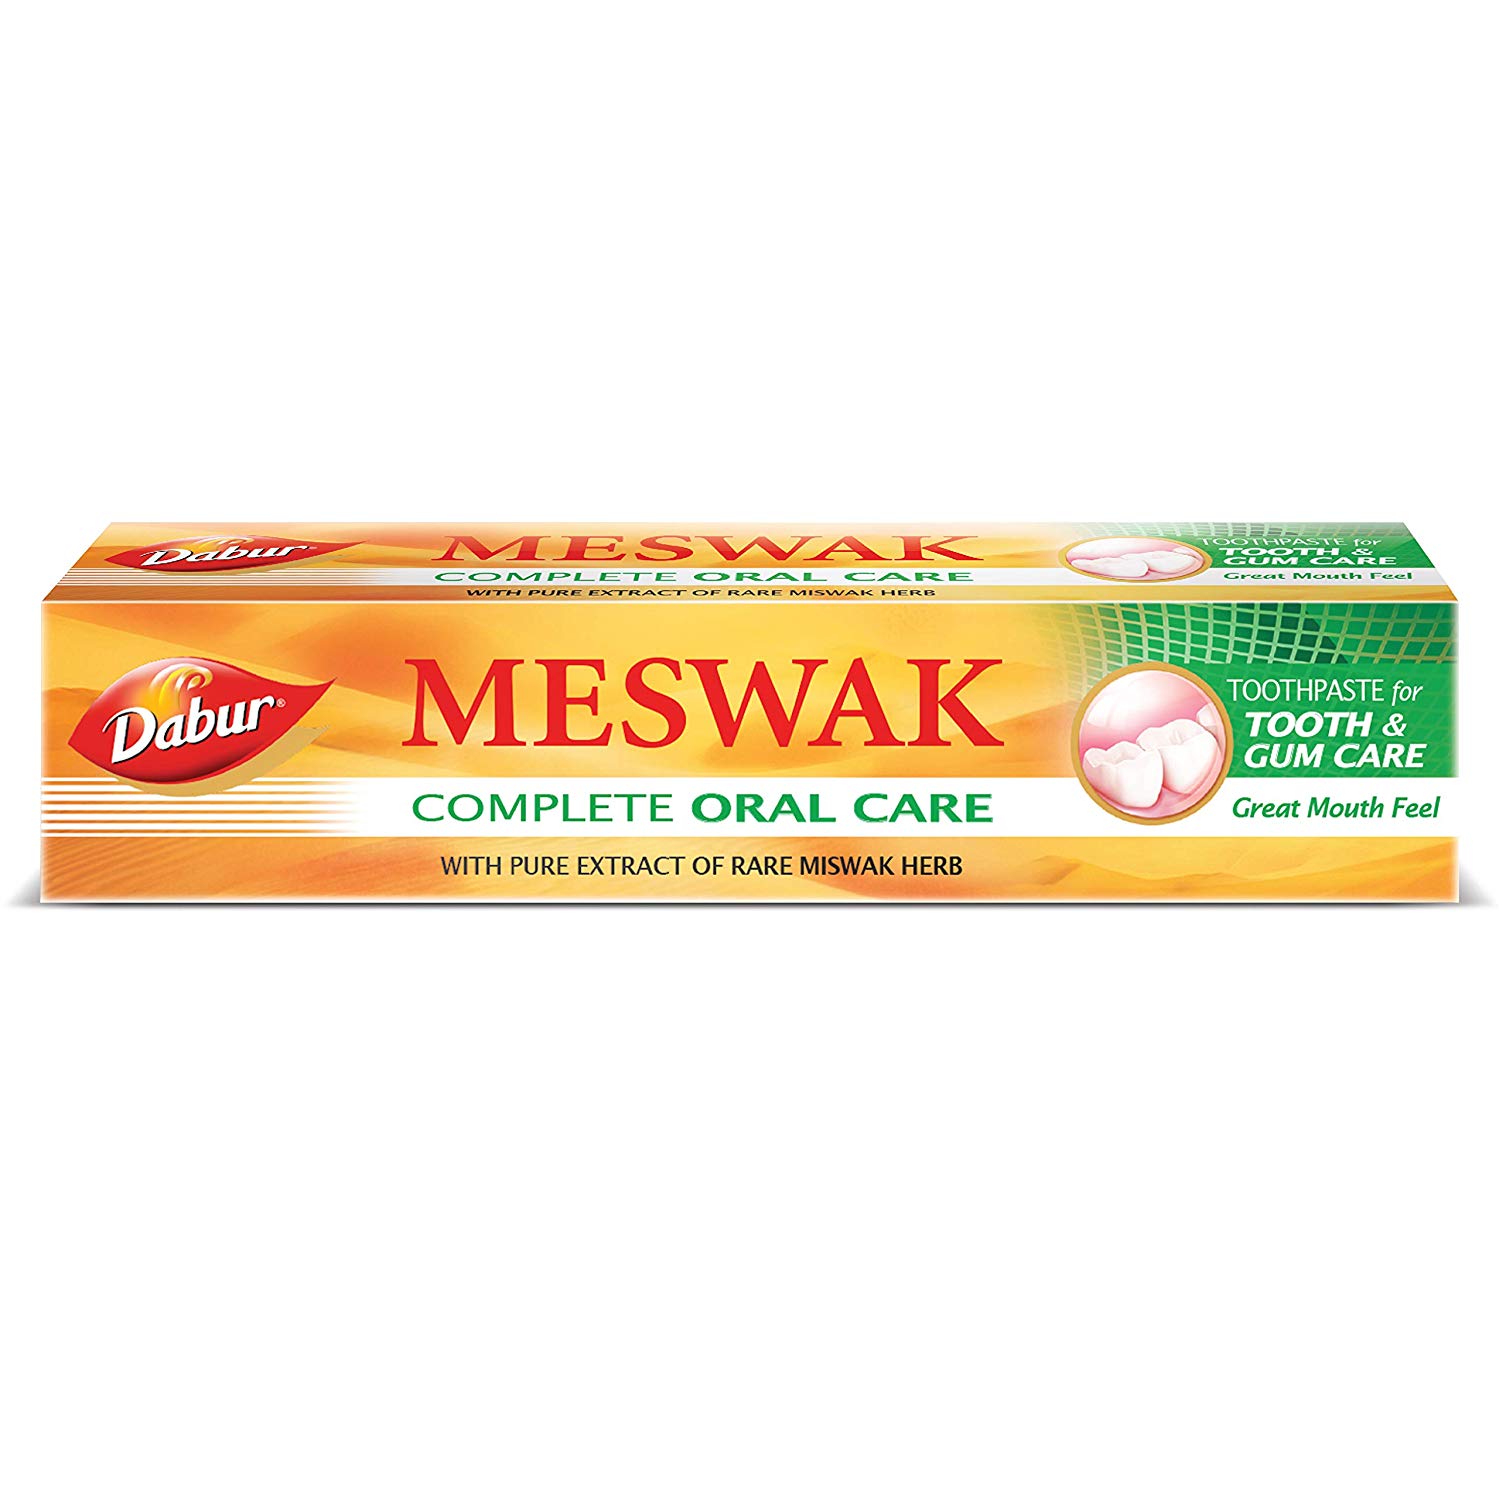 Зубная паста Мисвак, 100 г, производитель Дабур; Meswak Toothpaste, 100 g, Dabur